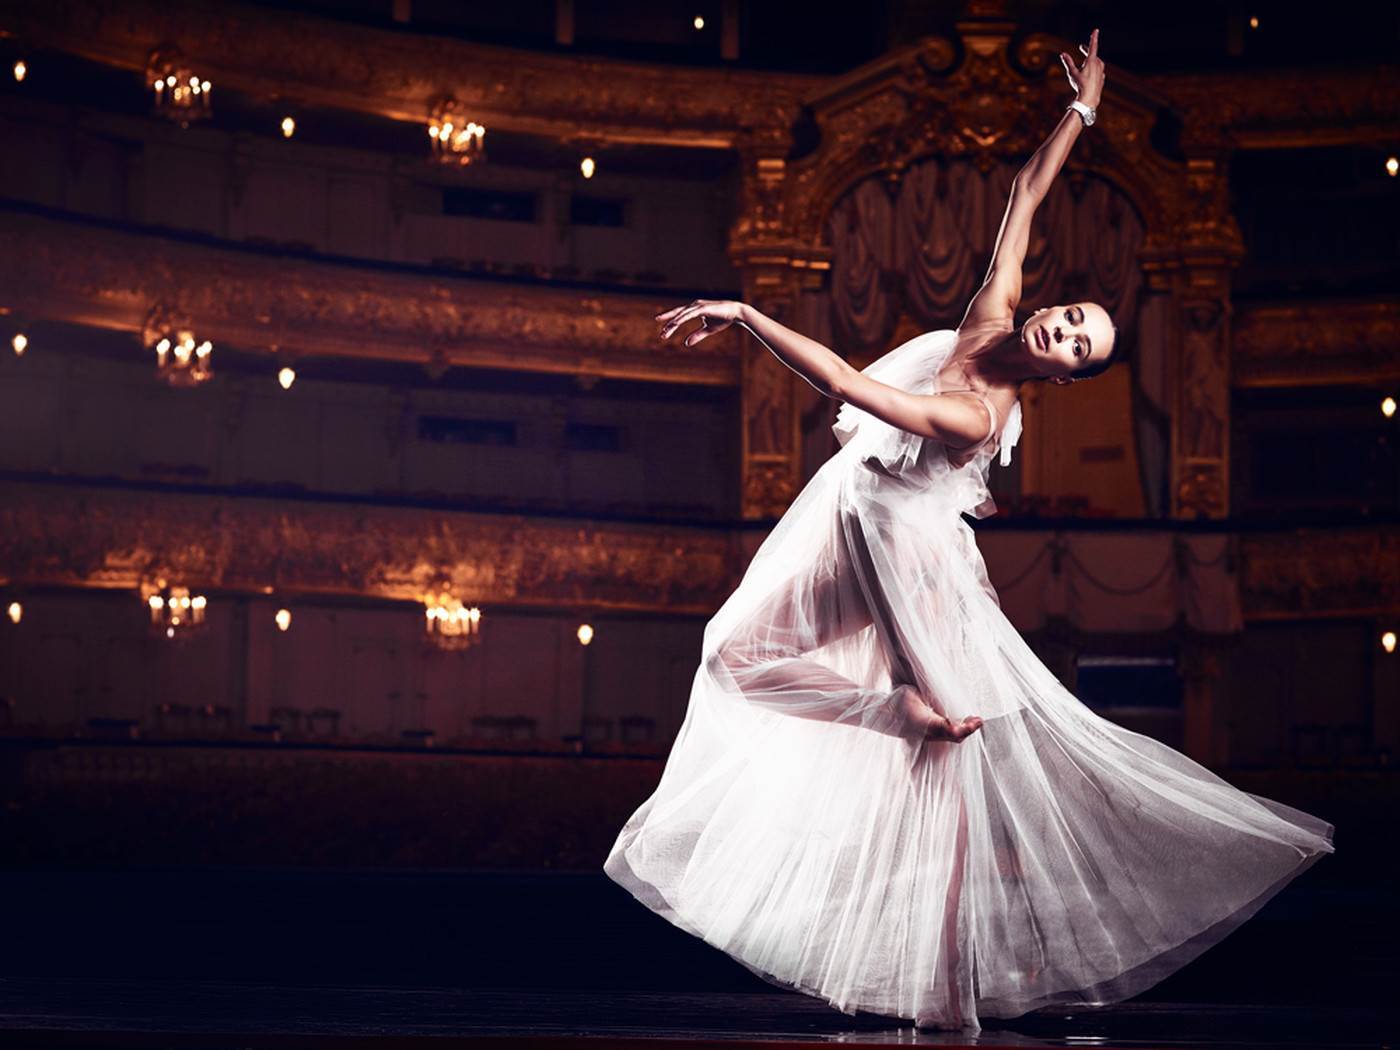 20 красавиц российского балета Красивые девушки,Супер новости,балерины,знаменитости,красивые девушки